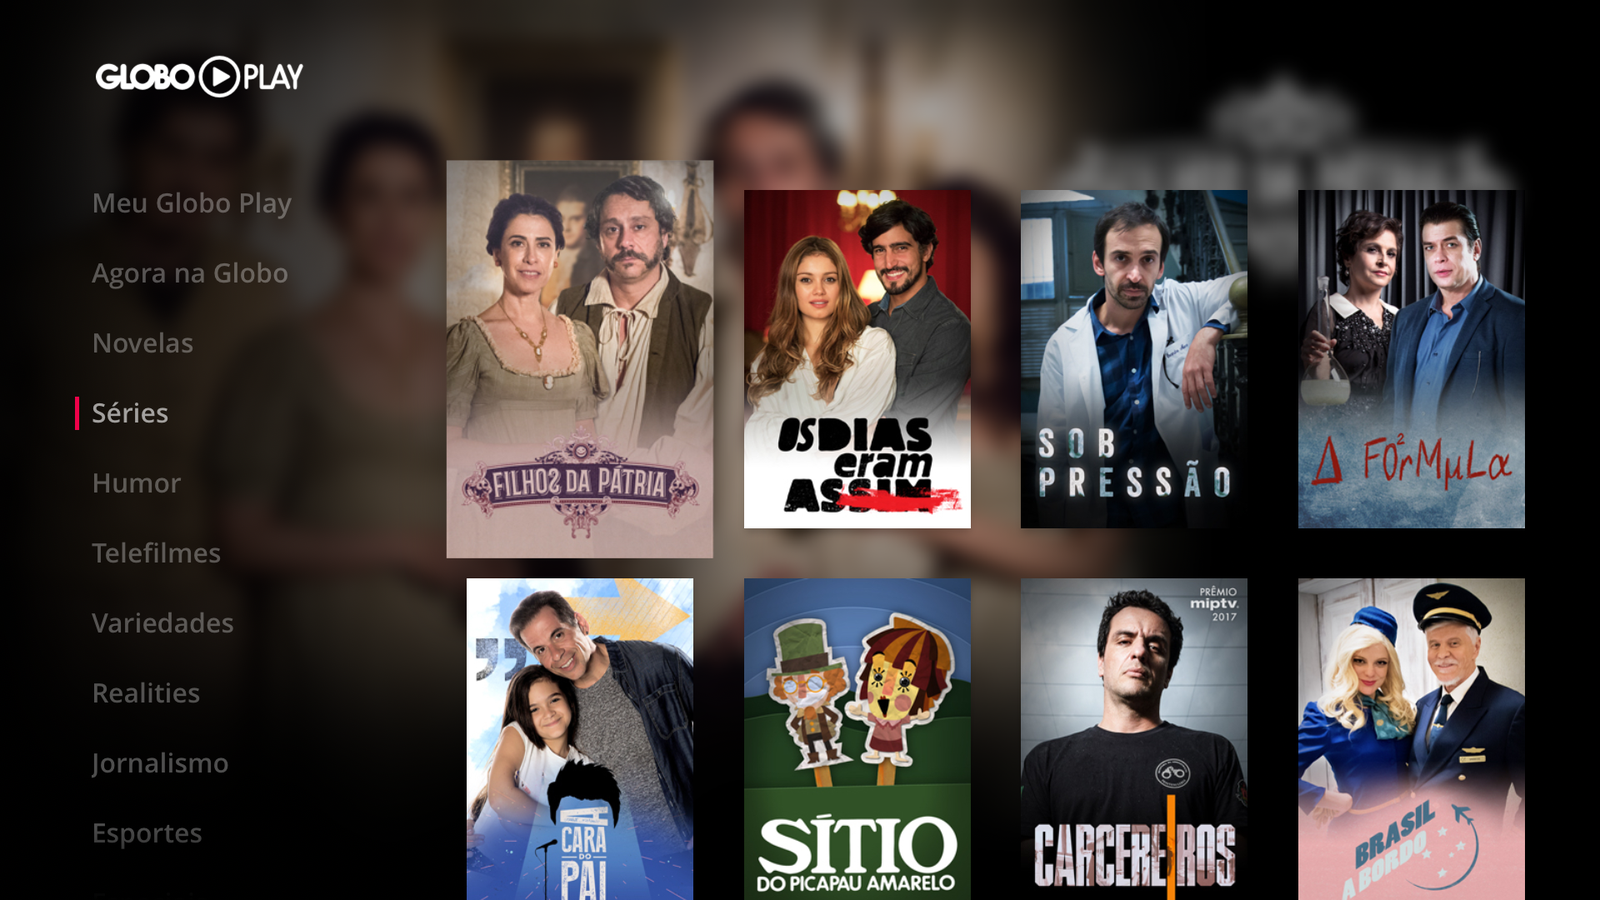 Globo Play rakendus jõuab Apple TV-sse juba koos 4K sisu ja otseülekandega [atualizado: saiu!]